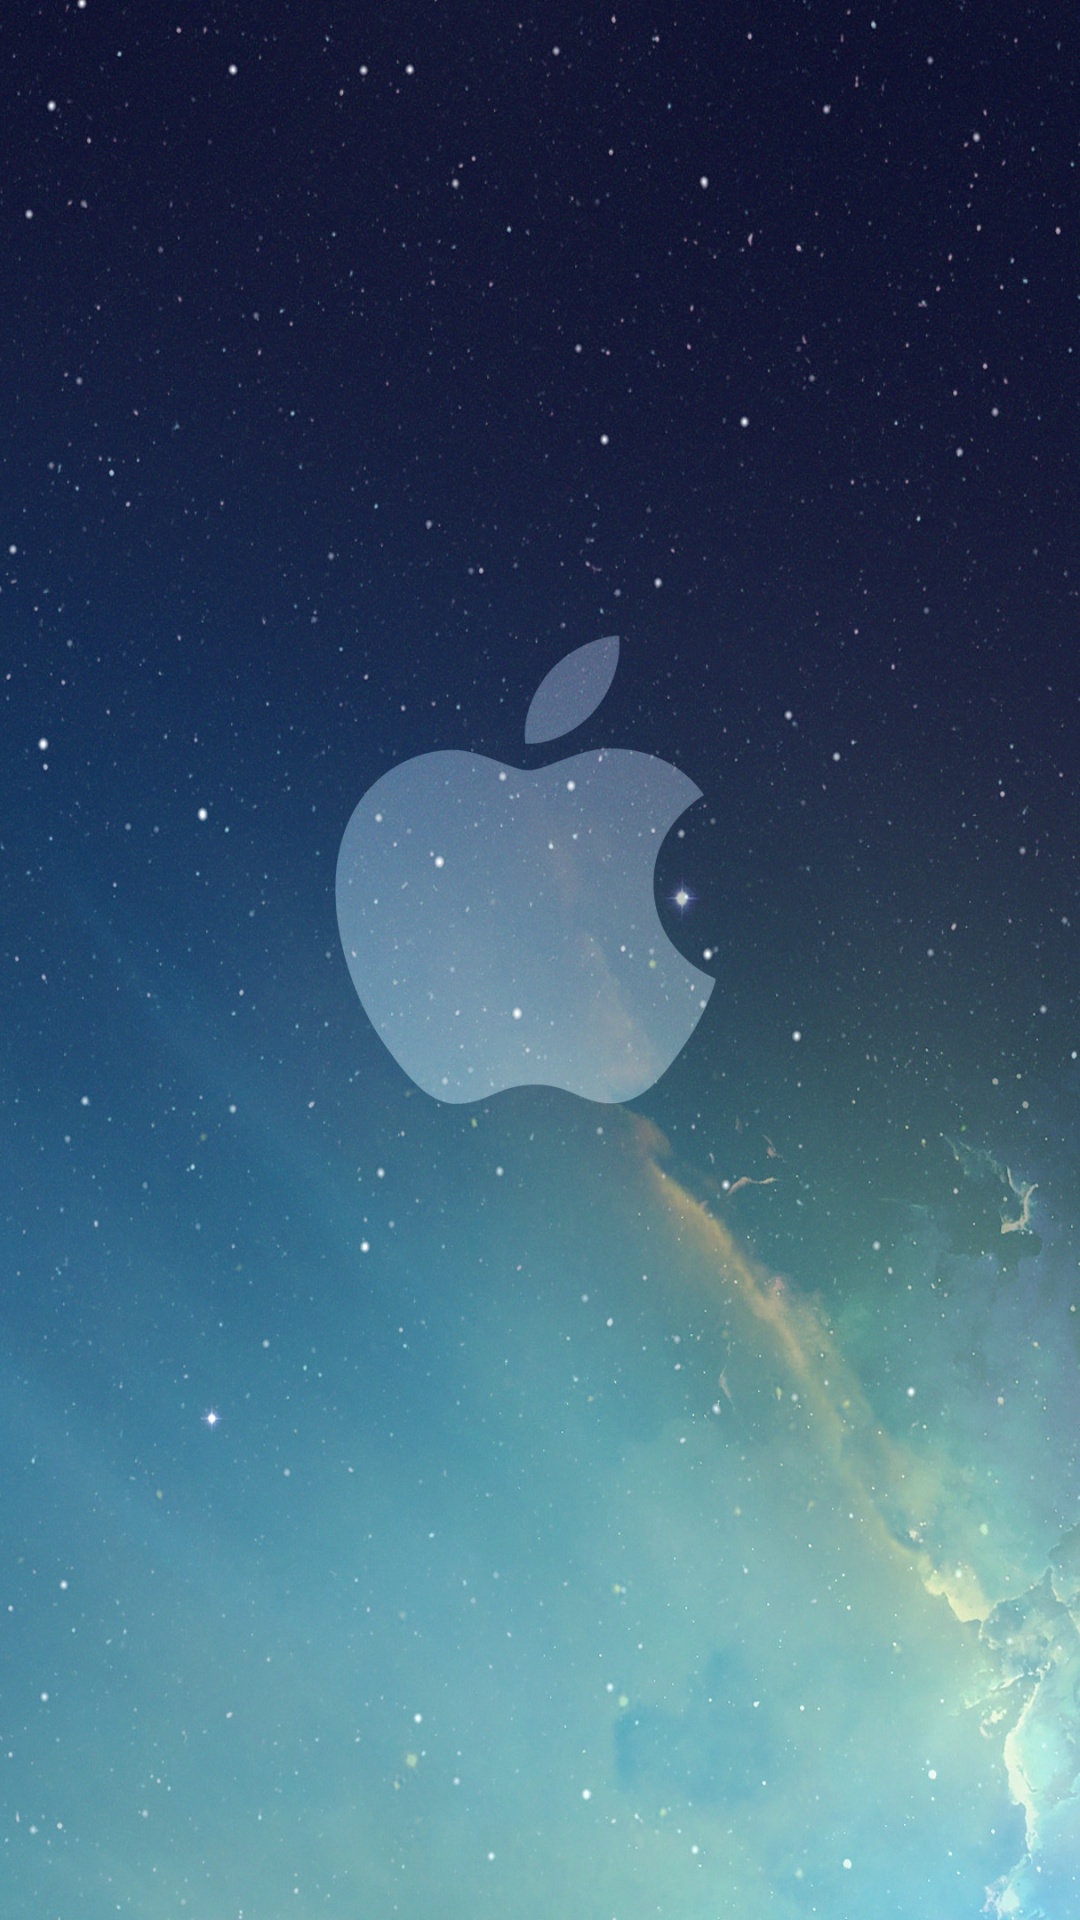 IOS 7, Ios, Apple, Azul, Ambiente. Wallpaper in 1080x1920 Resolution